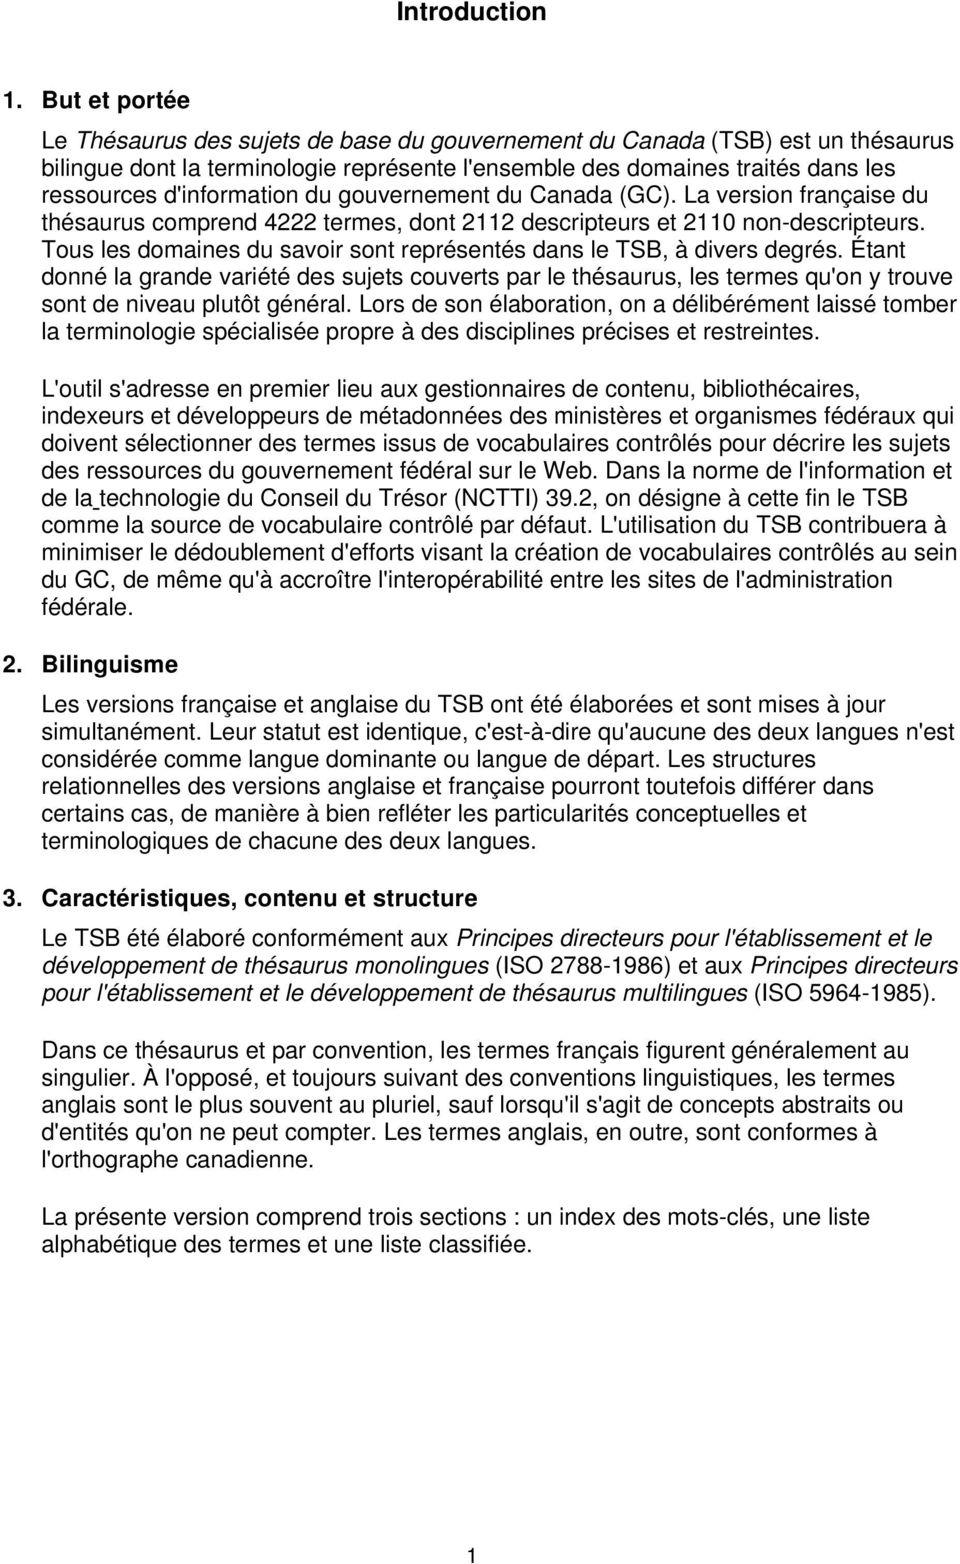 d'information du gouvernement du Canada (GC). La version française du thésaurus comprend 4222 termes, dont 2112 descripteurs et 2110 non-descripteurs.